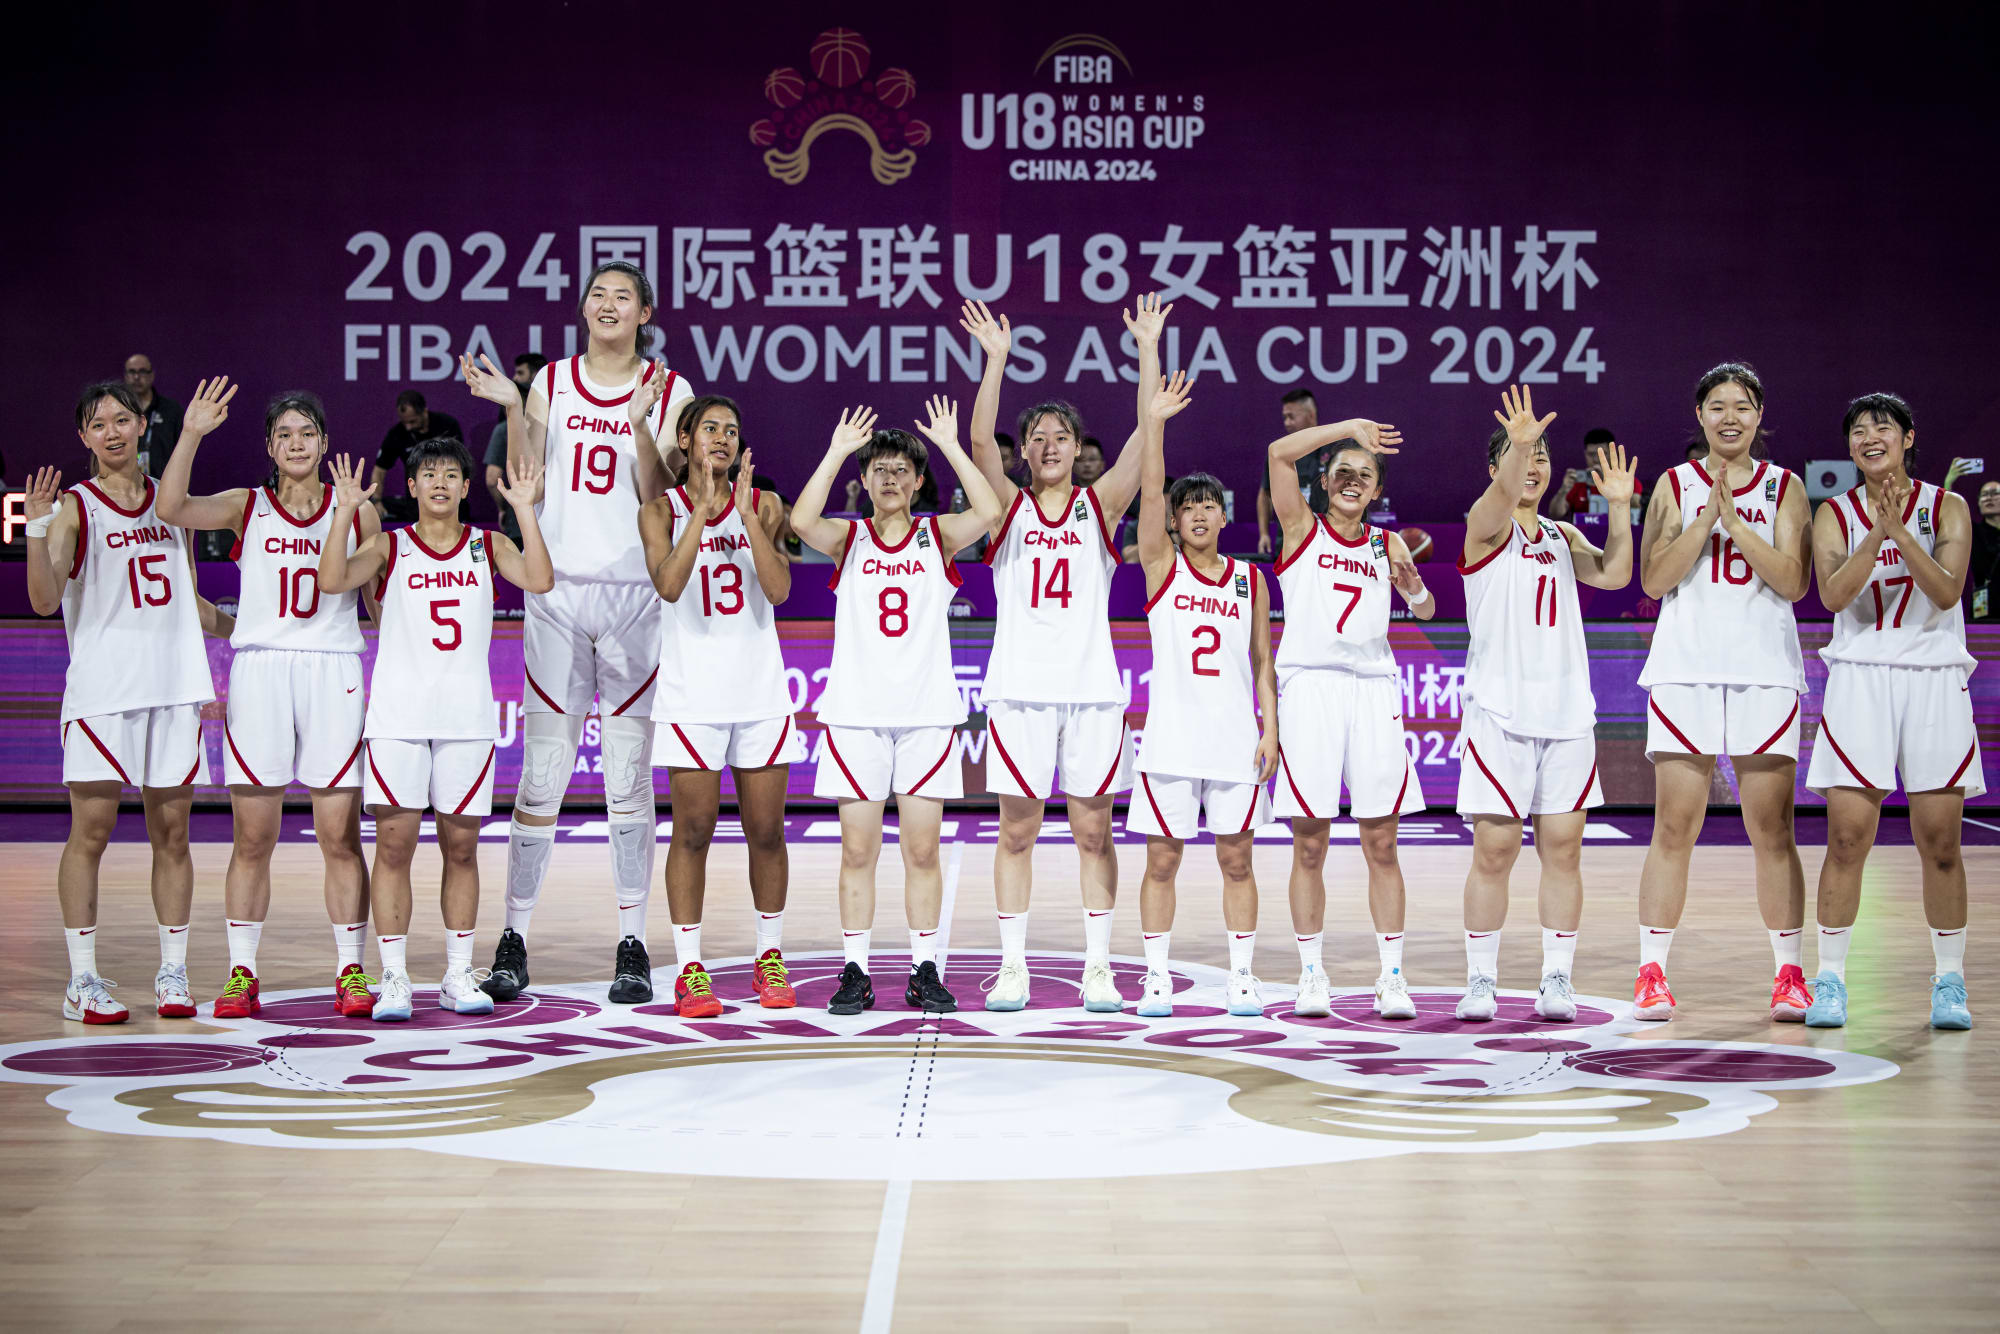 中国队击败韩国队晋级决赛对阵澳大利亚队——2024年国际篮联U18女子亚洲杯